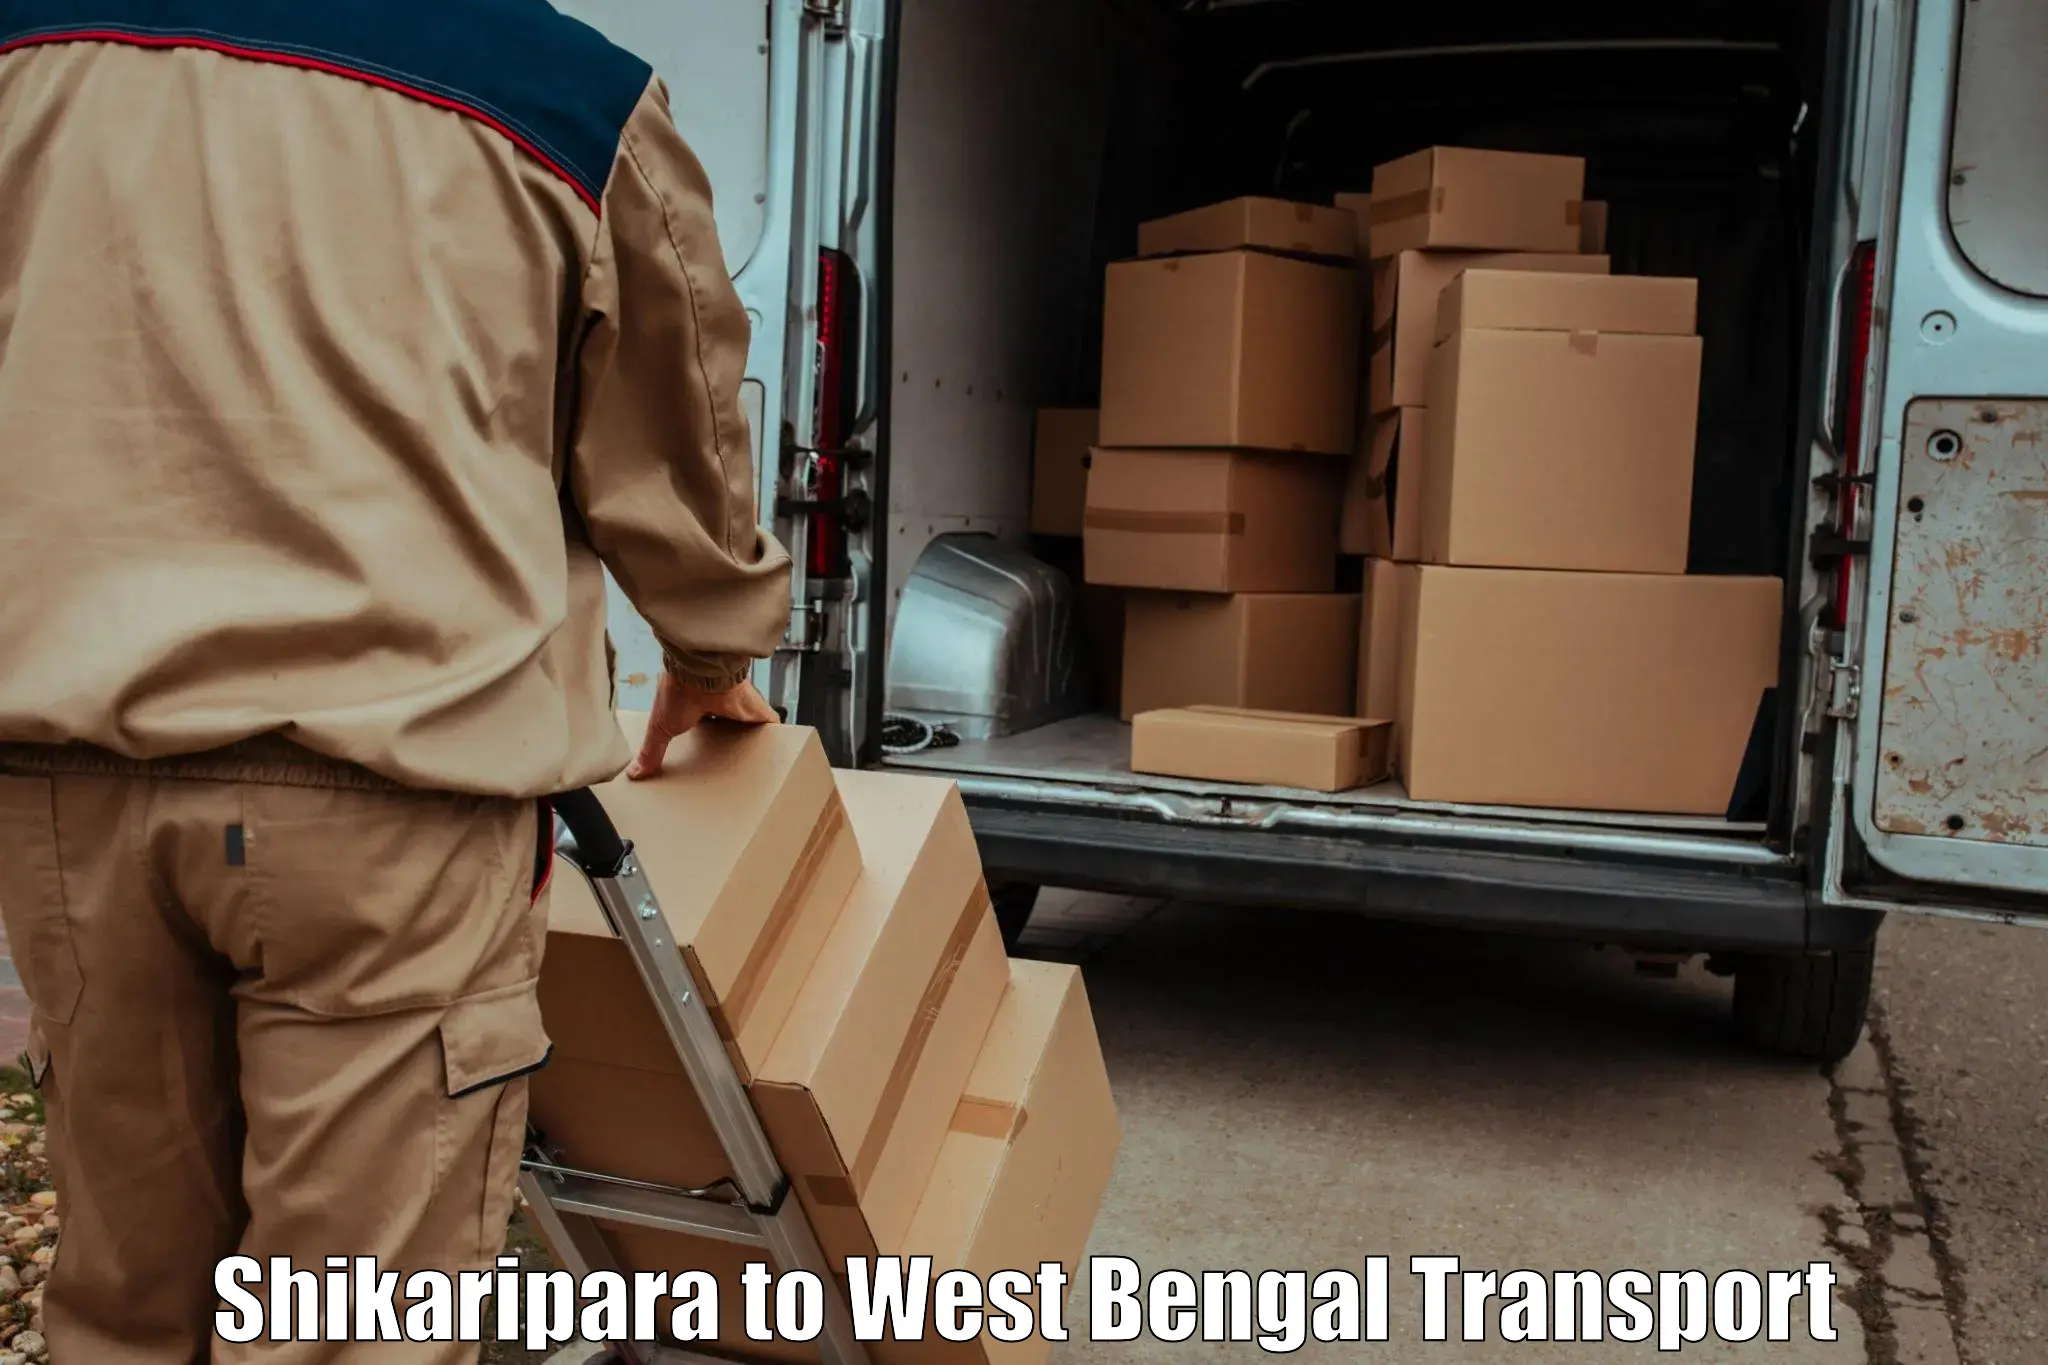 Furniture transport service Shikaripara to Tarkeshwar